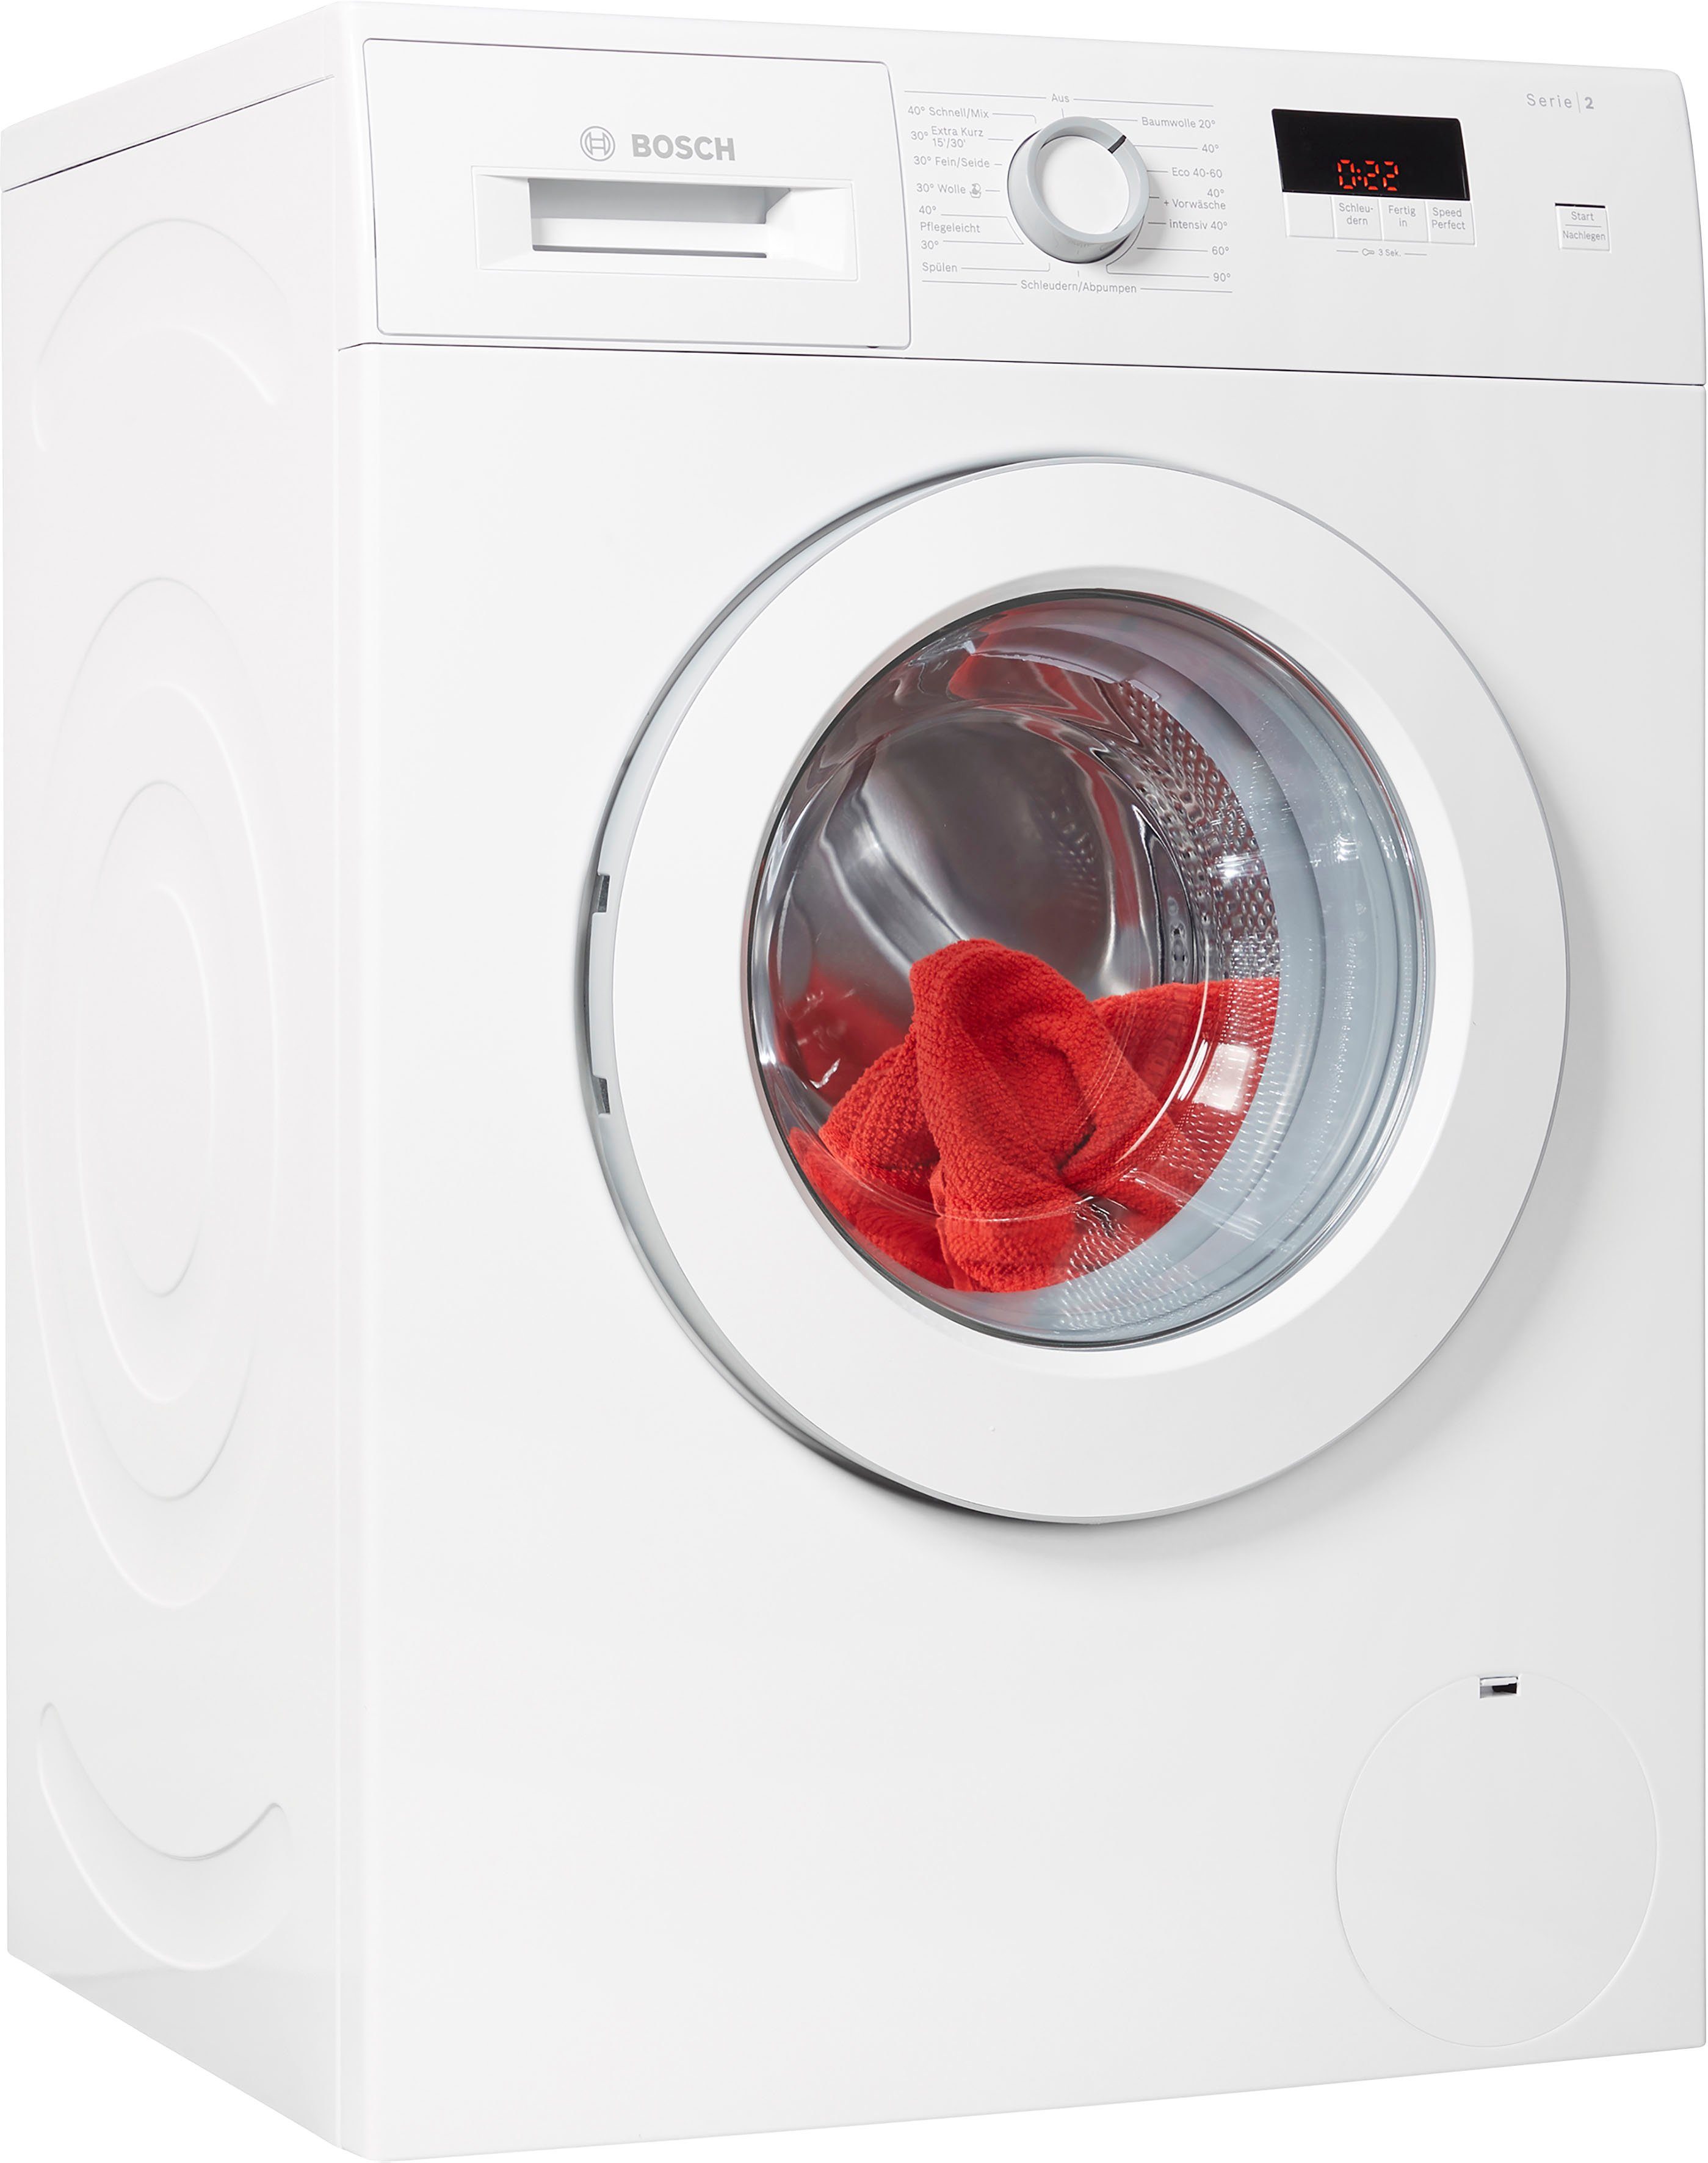 BOSCH Waschmaschine WAJ28022, 7,0 kg, 1400 U/min, Eco Silence Drive™,  AntiVibration Design